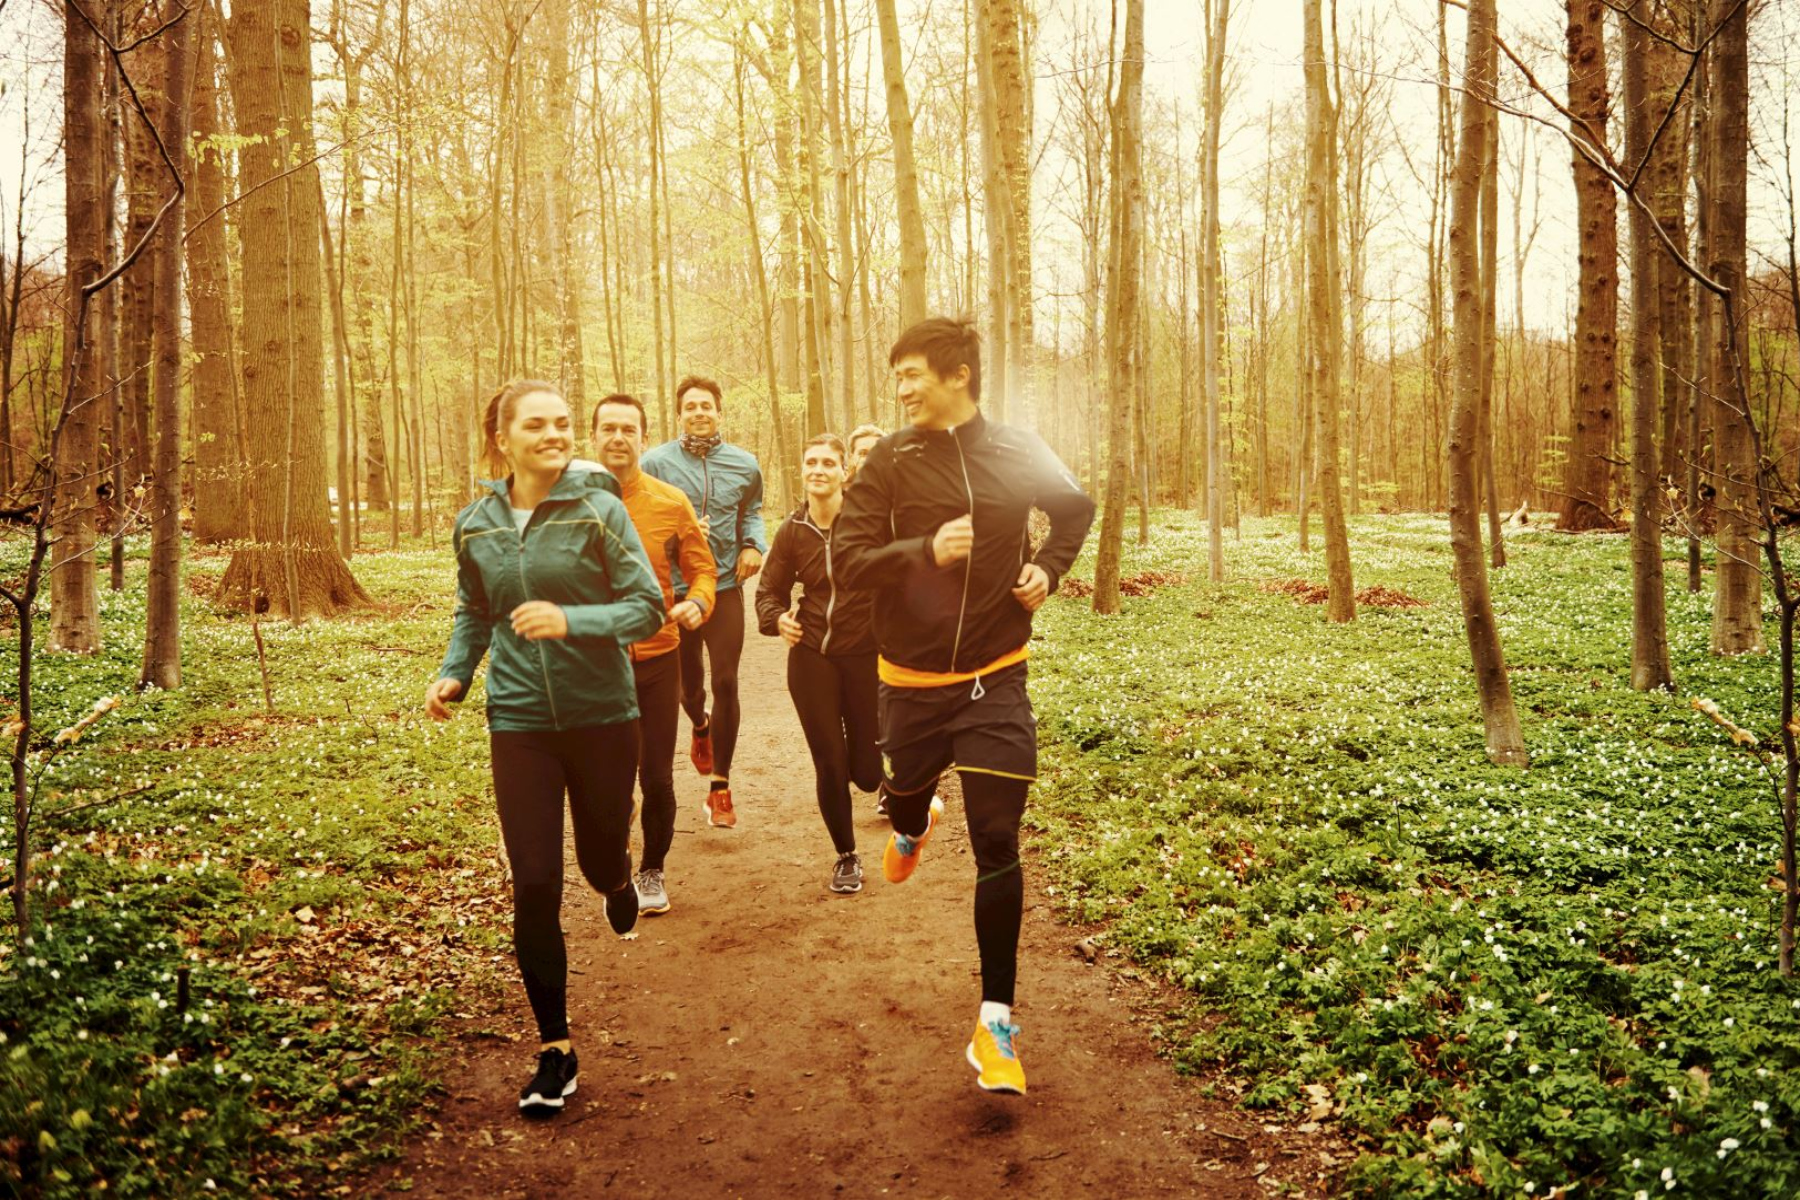 Τρέξιμο: Πώς το τρέξιμο μπορεί να βοηθήσει την ψυχική υγεία;